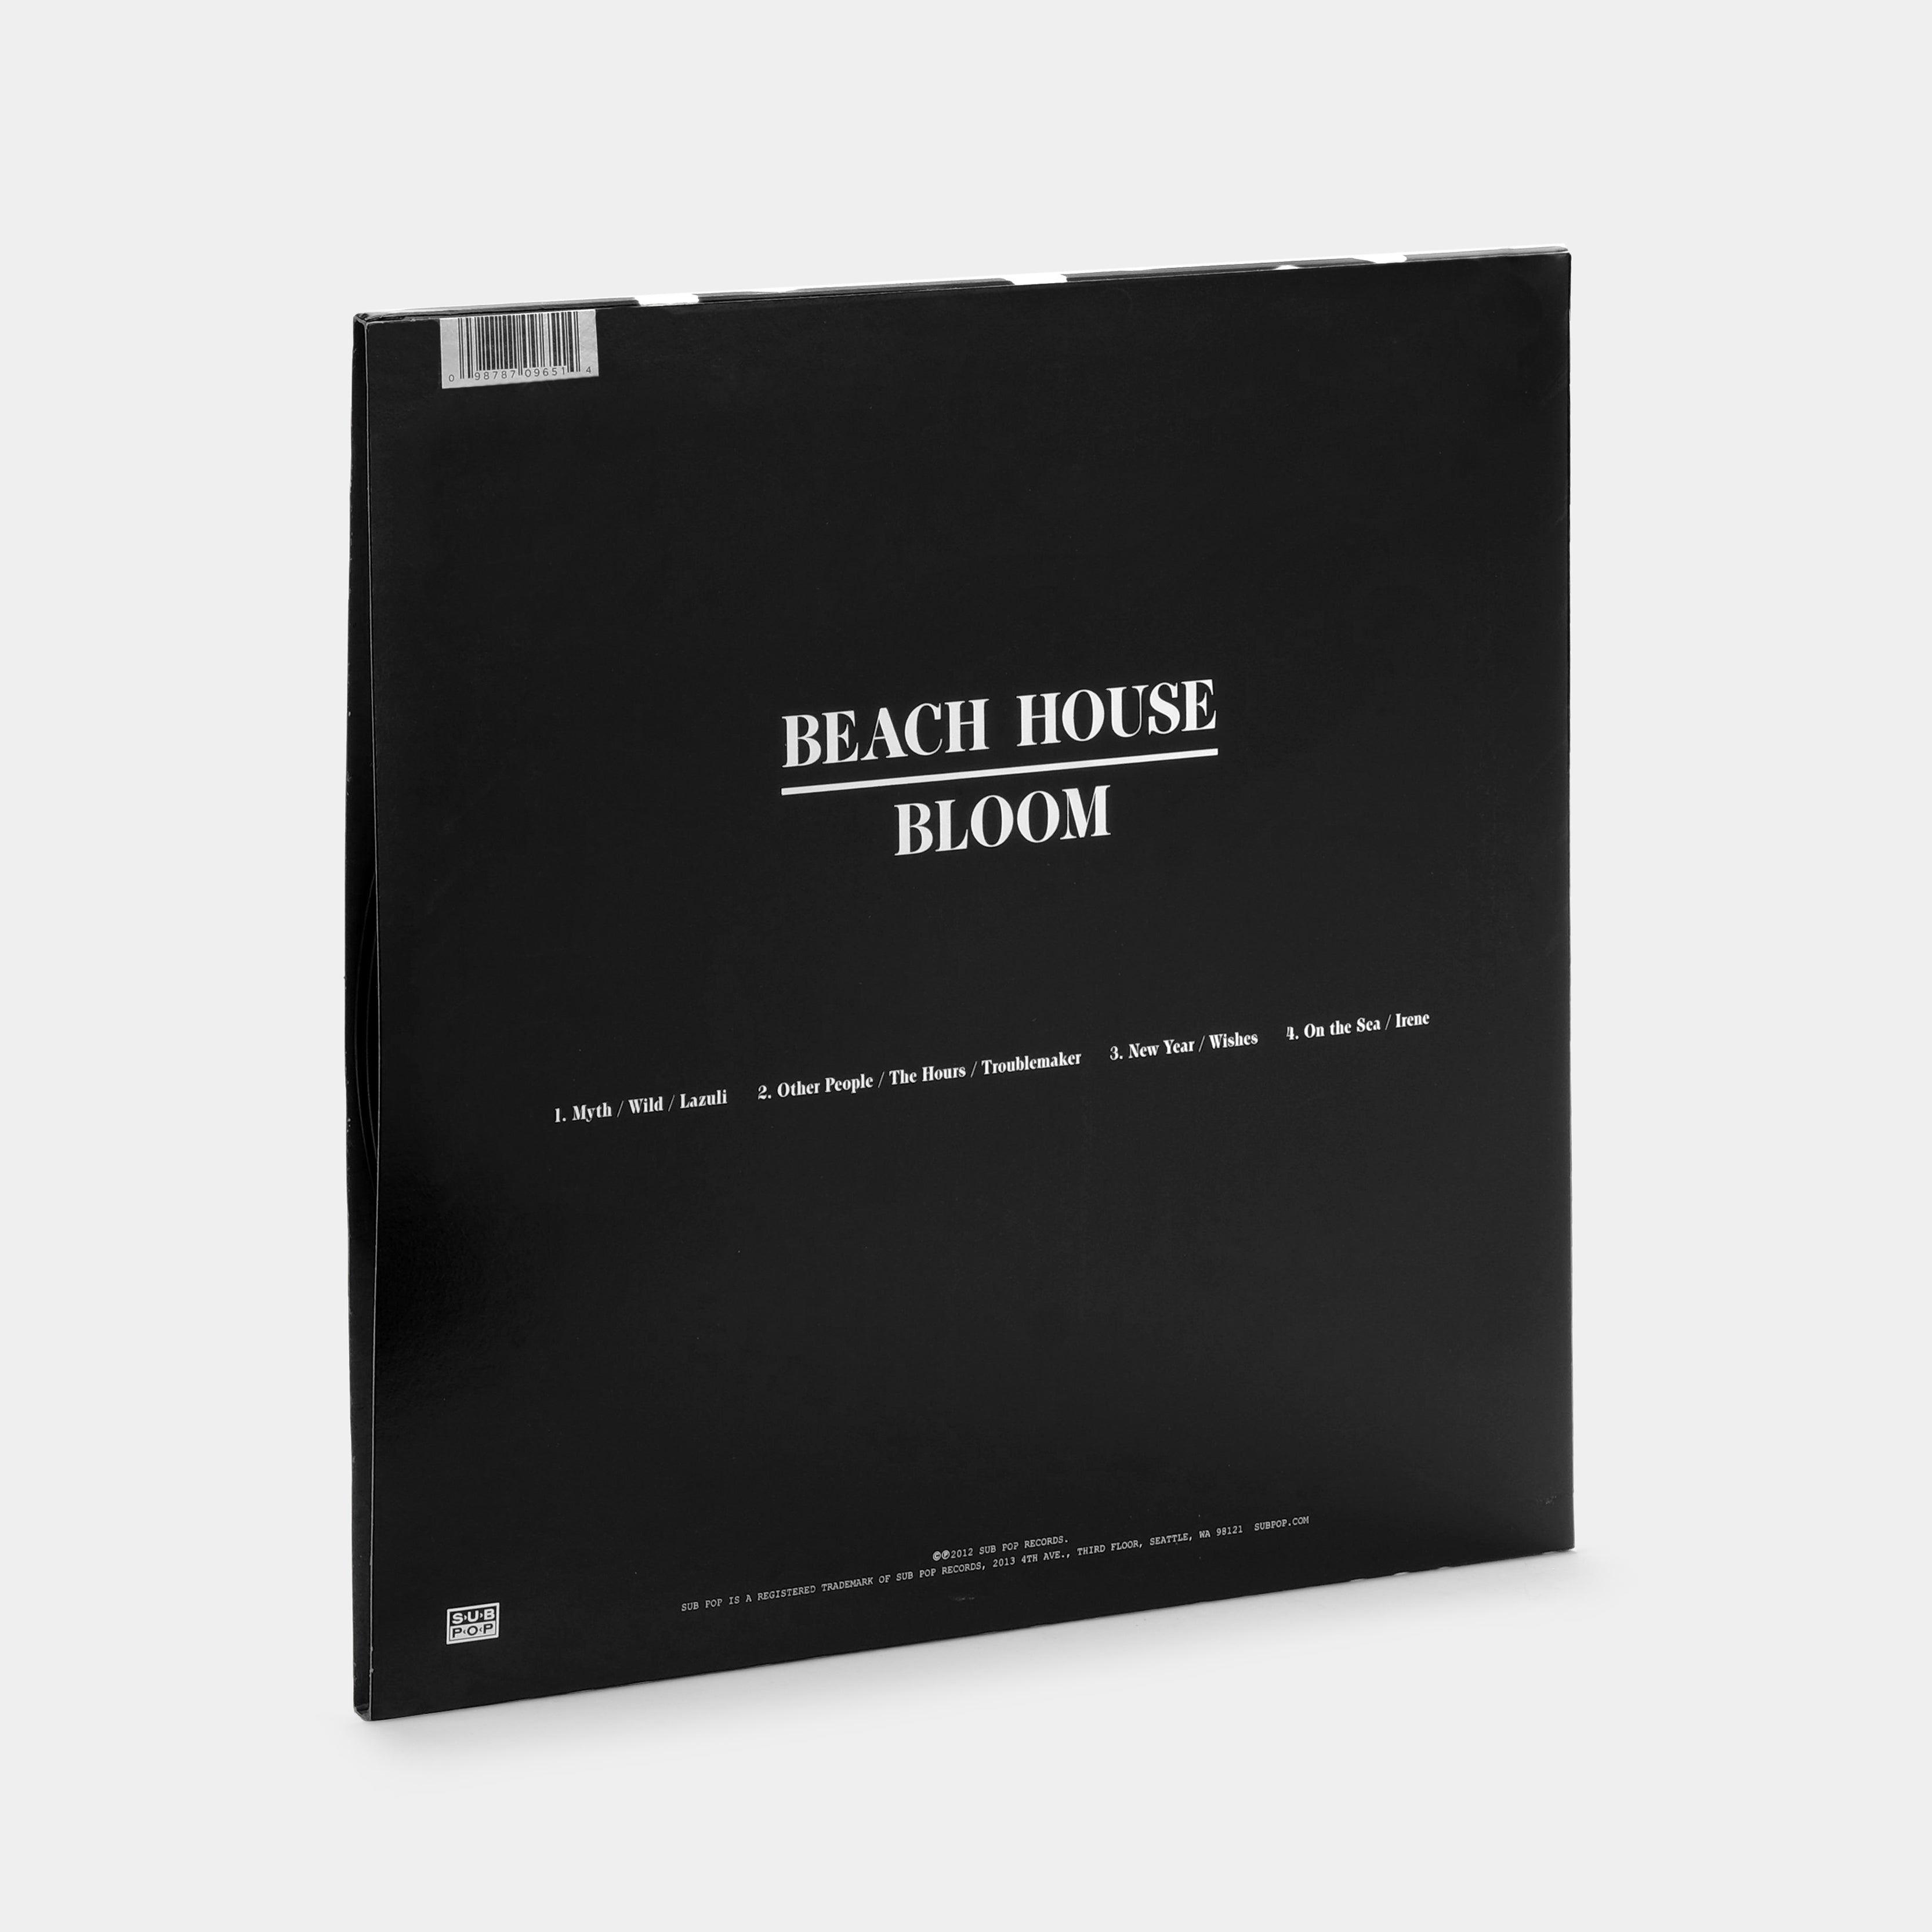 Beach House - Bloom 2xLP Vinyl Record